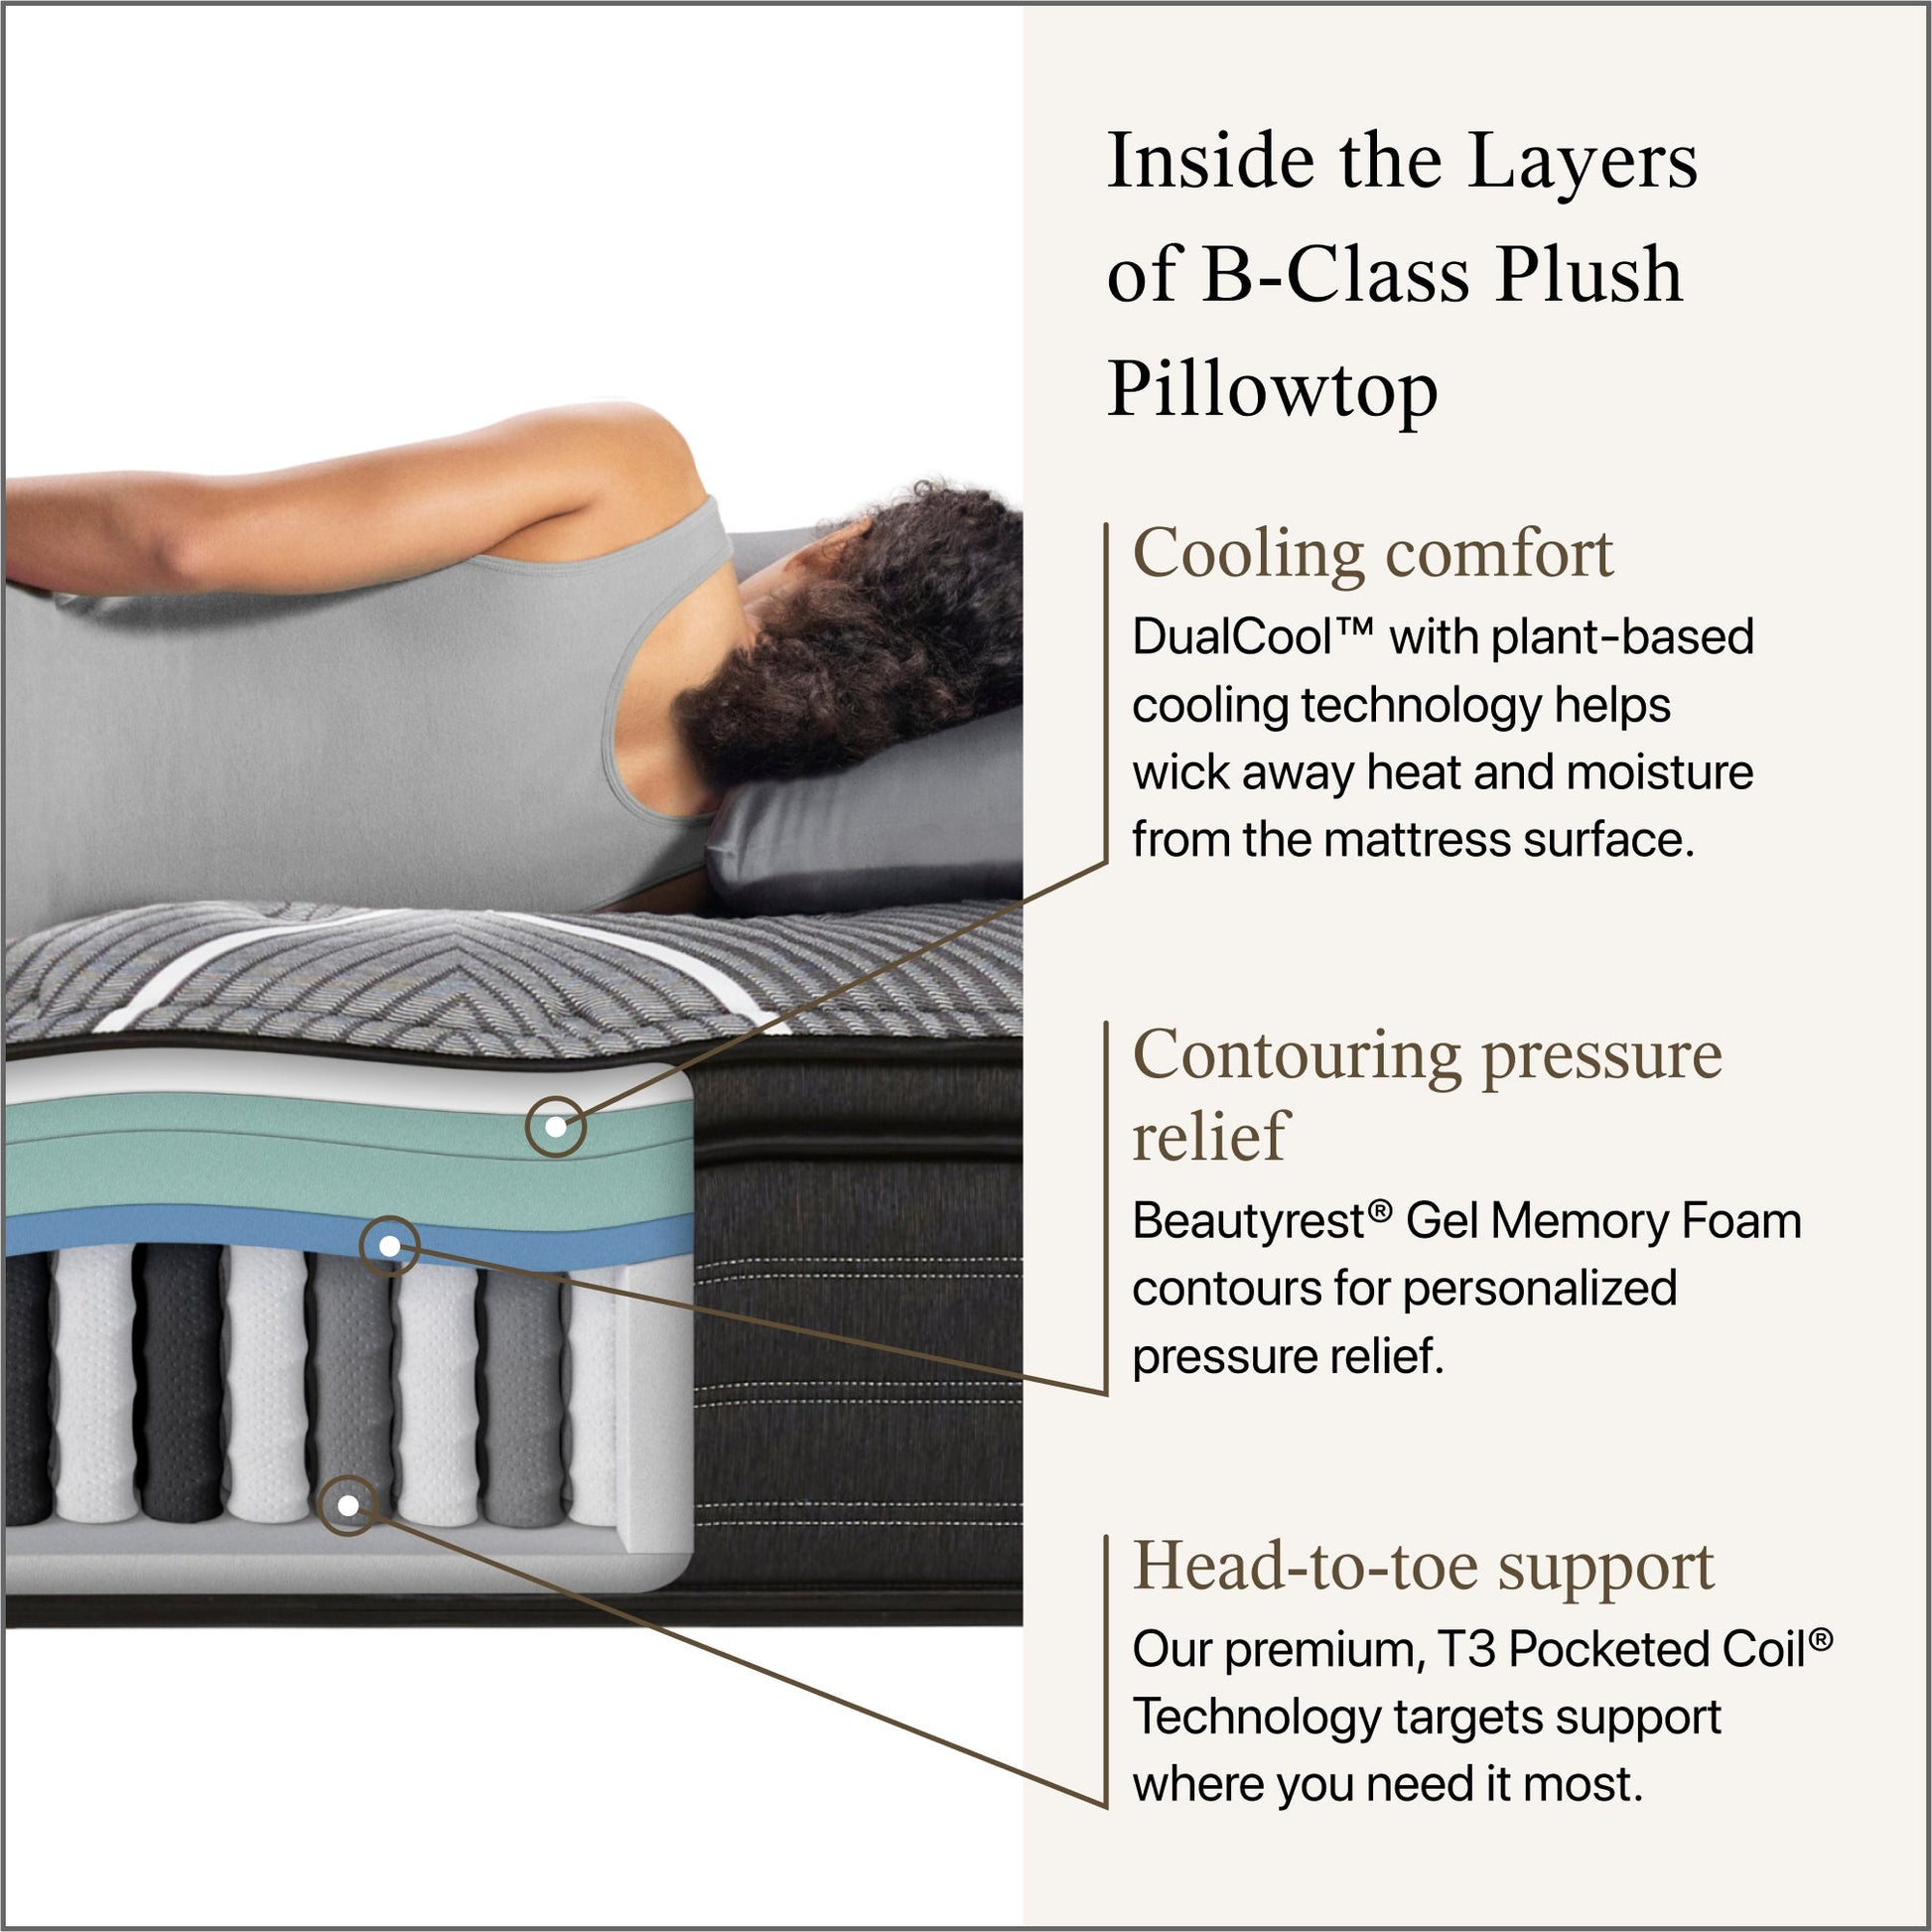 Beautyrest Black B-Class Plush Pillow Top Mattress Cutaway Image with overlay